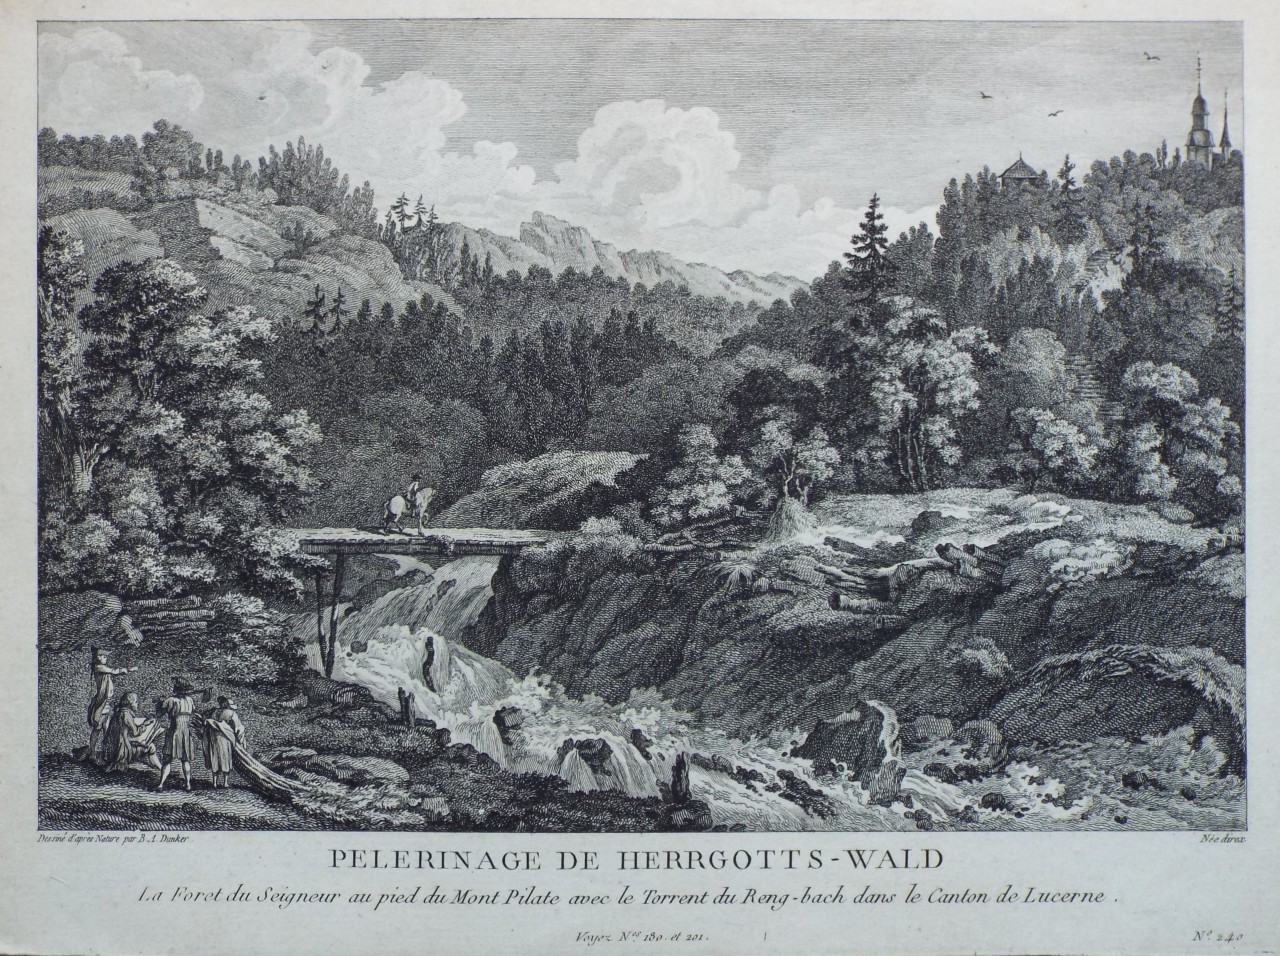 Print - Pelerinage de Herrgotts-Wald
La Foret du Seigneur au pied du Mont Pilate avec le Torrent du Reng-bach dans le Canton de Lucerne. - 